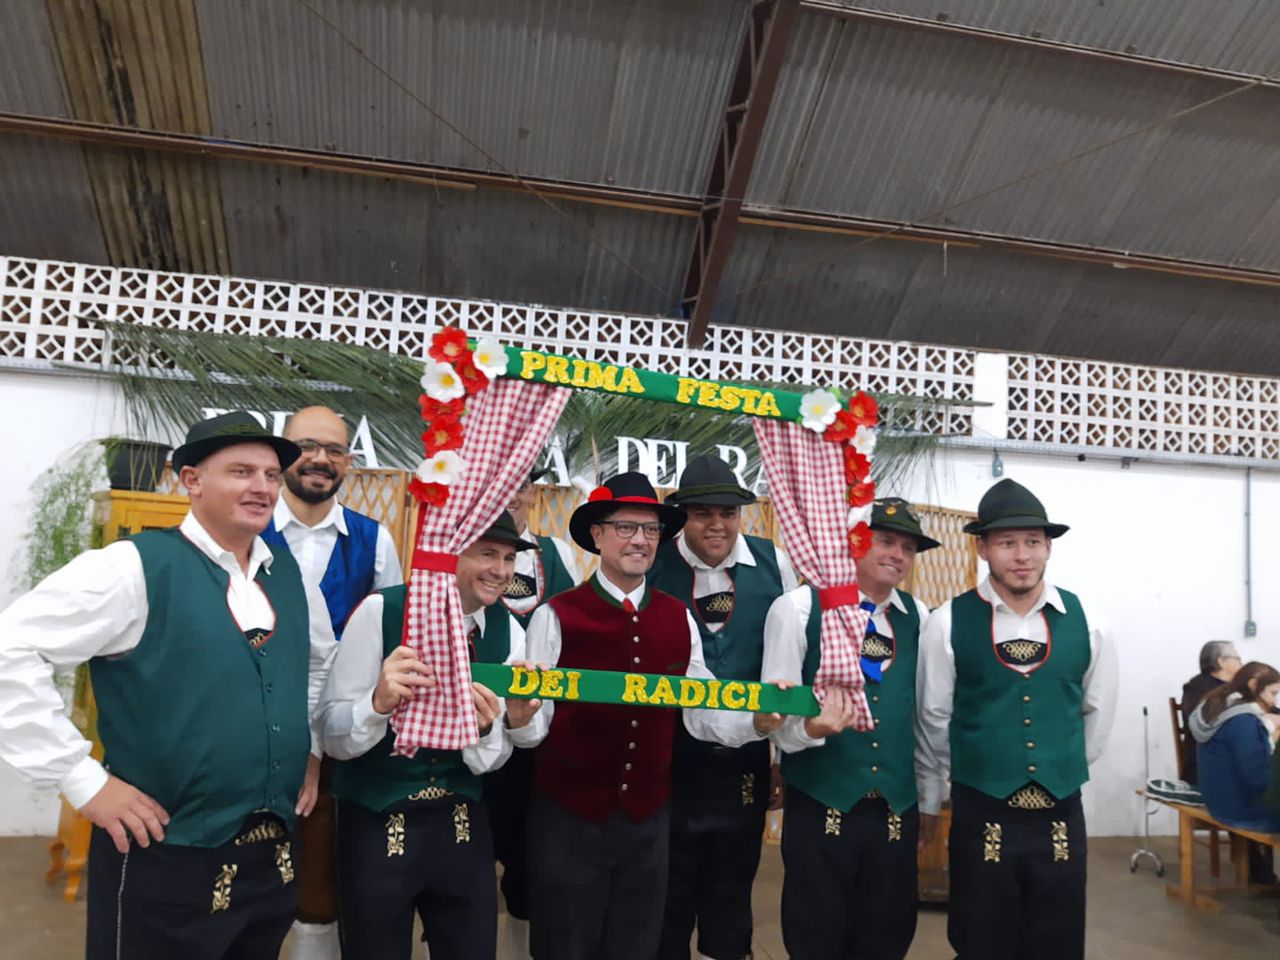 TANZ UND LIEBE Grupo participa de evento folclórico em Pinhalzinho